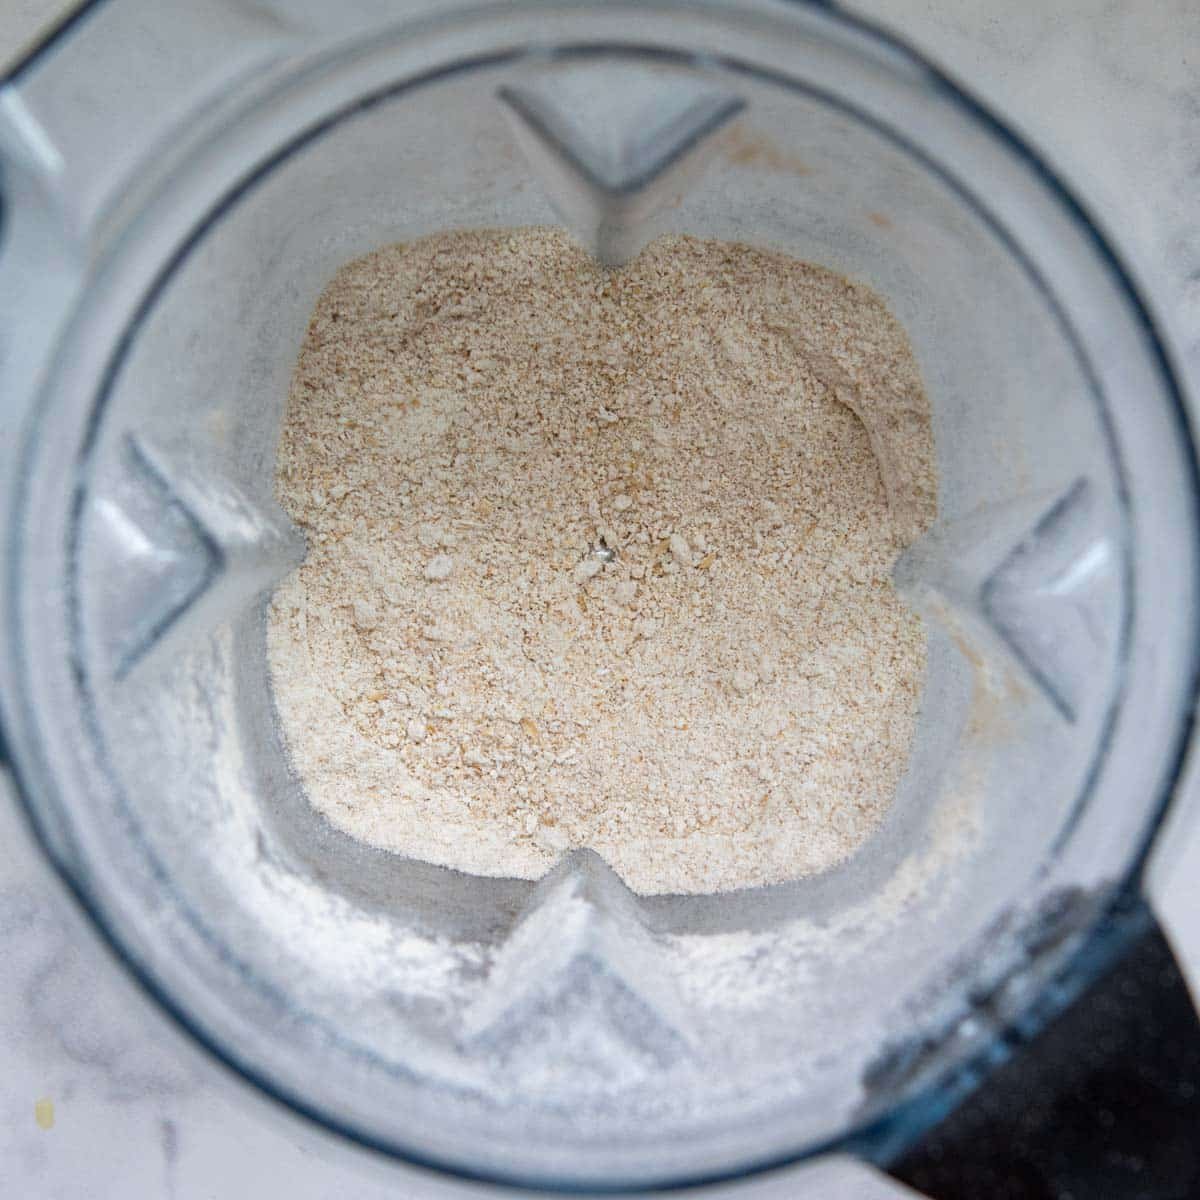 oats blended into oat flour in a blender.